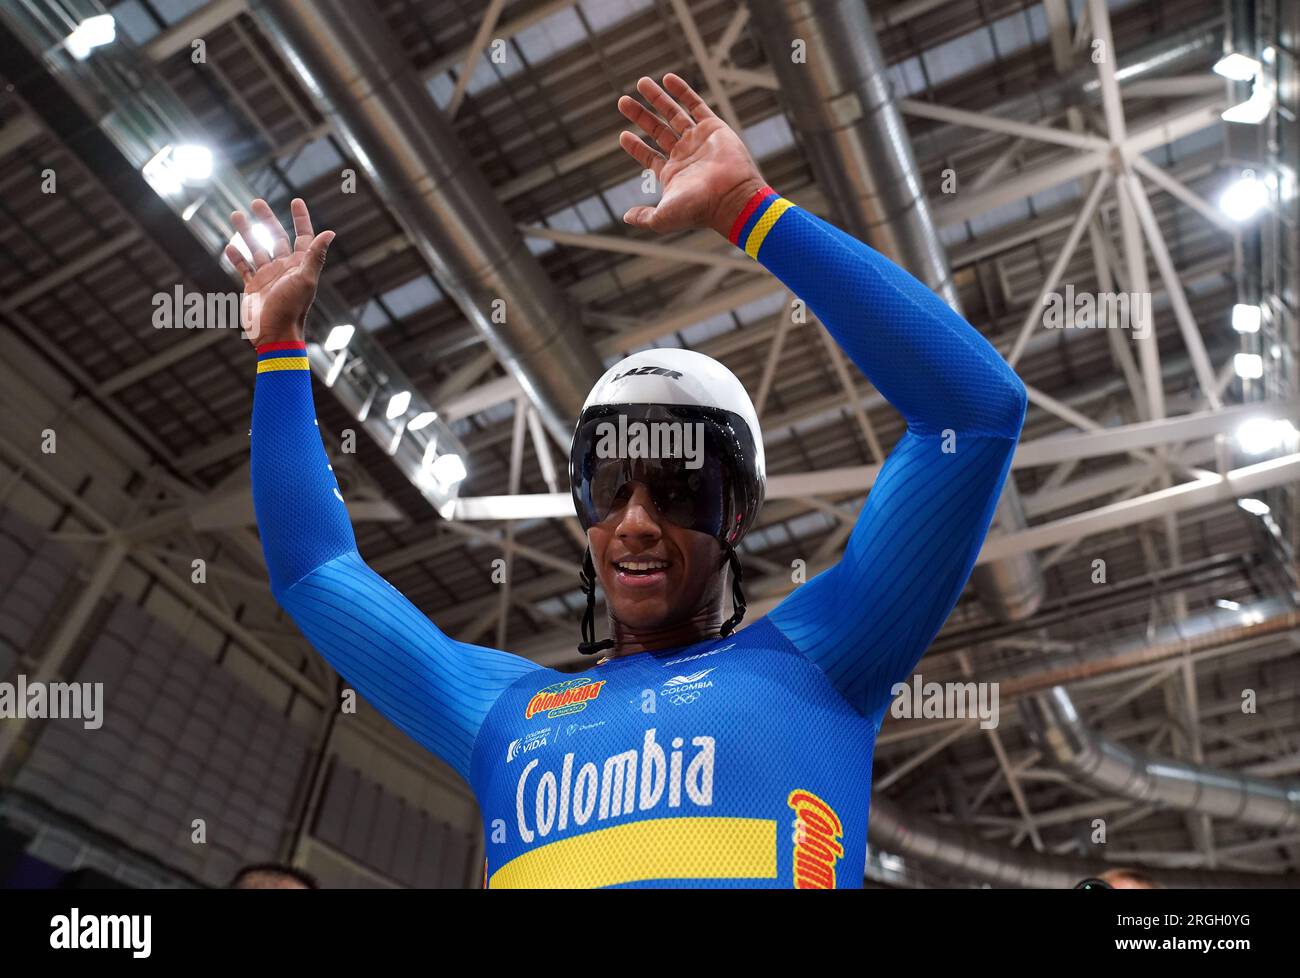 Le colombien Kevin Quintero a remporté la finale Elite Keirin lors de la septième journée des Championnats du monde cycliste UCI 2023 au Vélodrome Sir Chris Hoy, Glasgow. Date de la photo : mercredi 9 août 2023. Banque D'Images